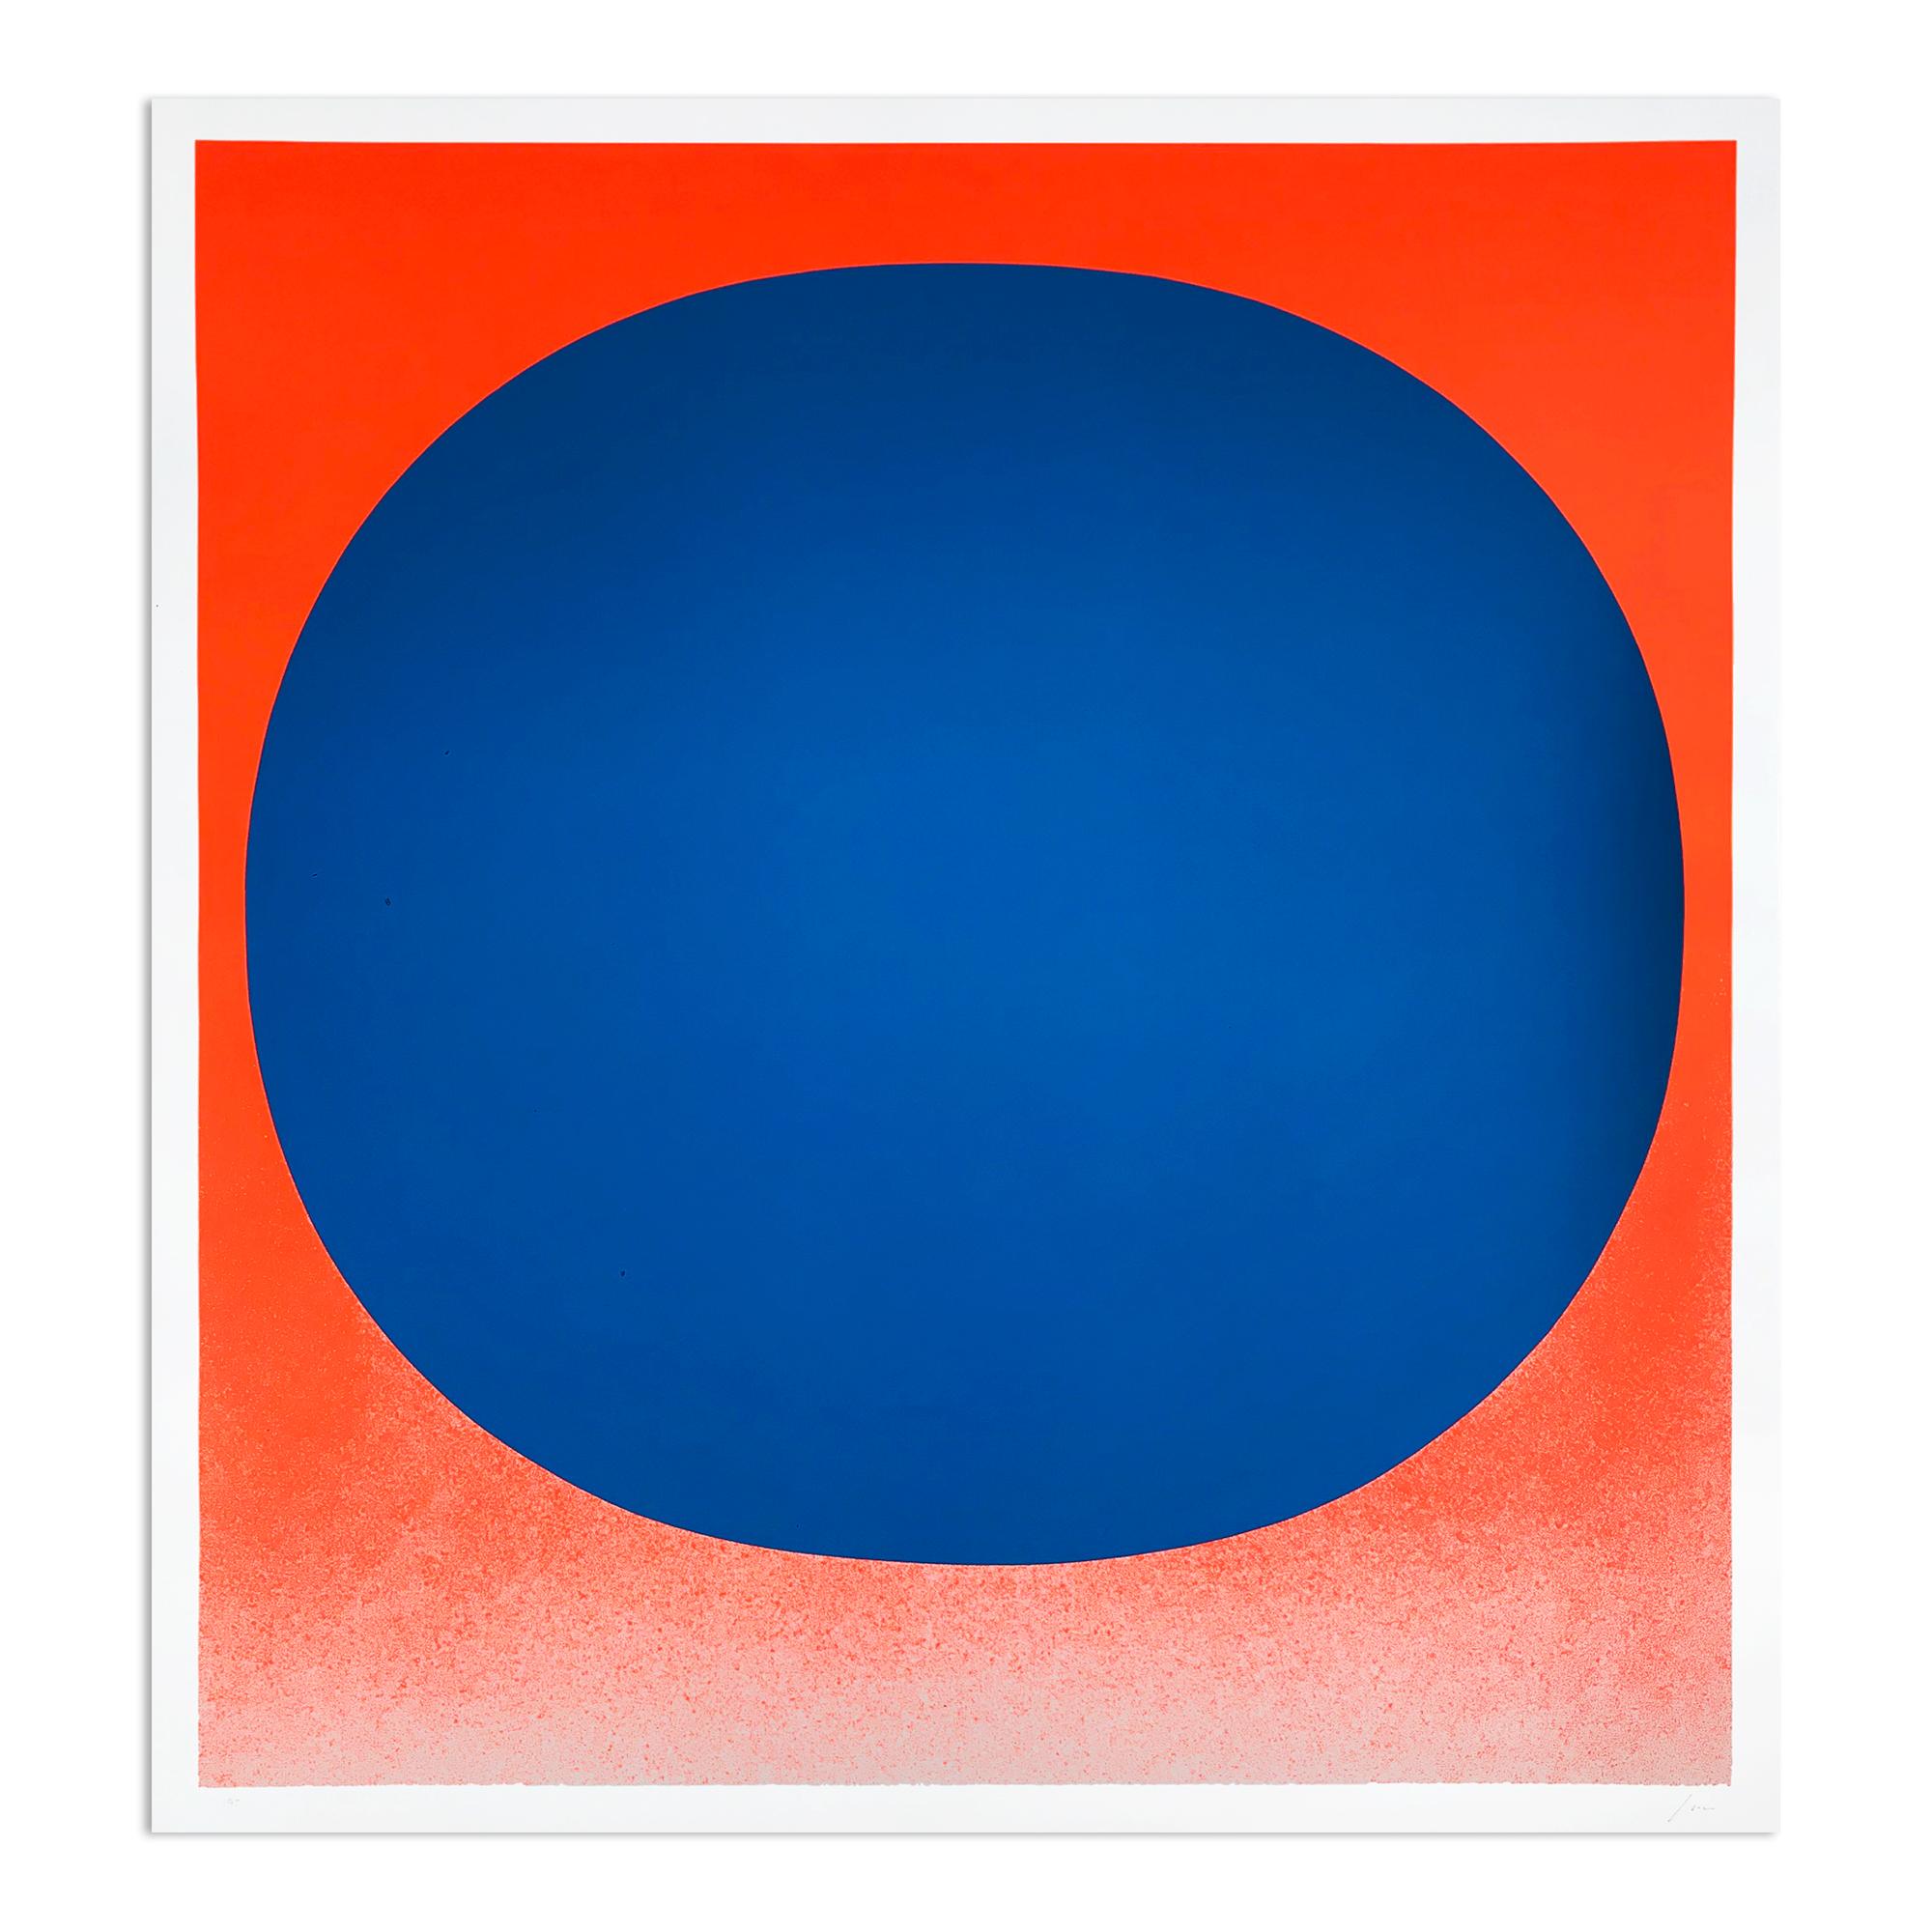 Rupprecht Geiger Abstract Print - Blue on Orange, Silkscreen, Abstract Art, Minimalism, 20th Century